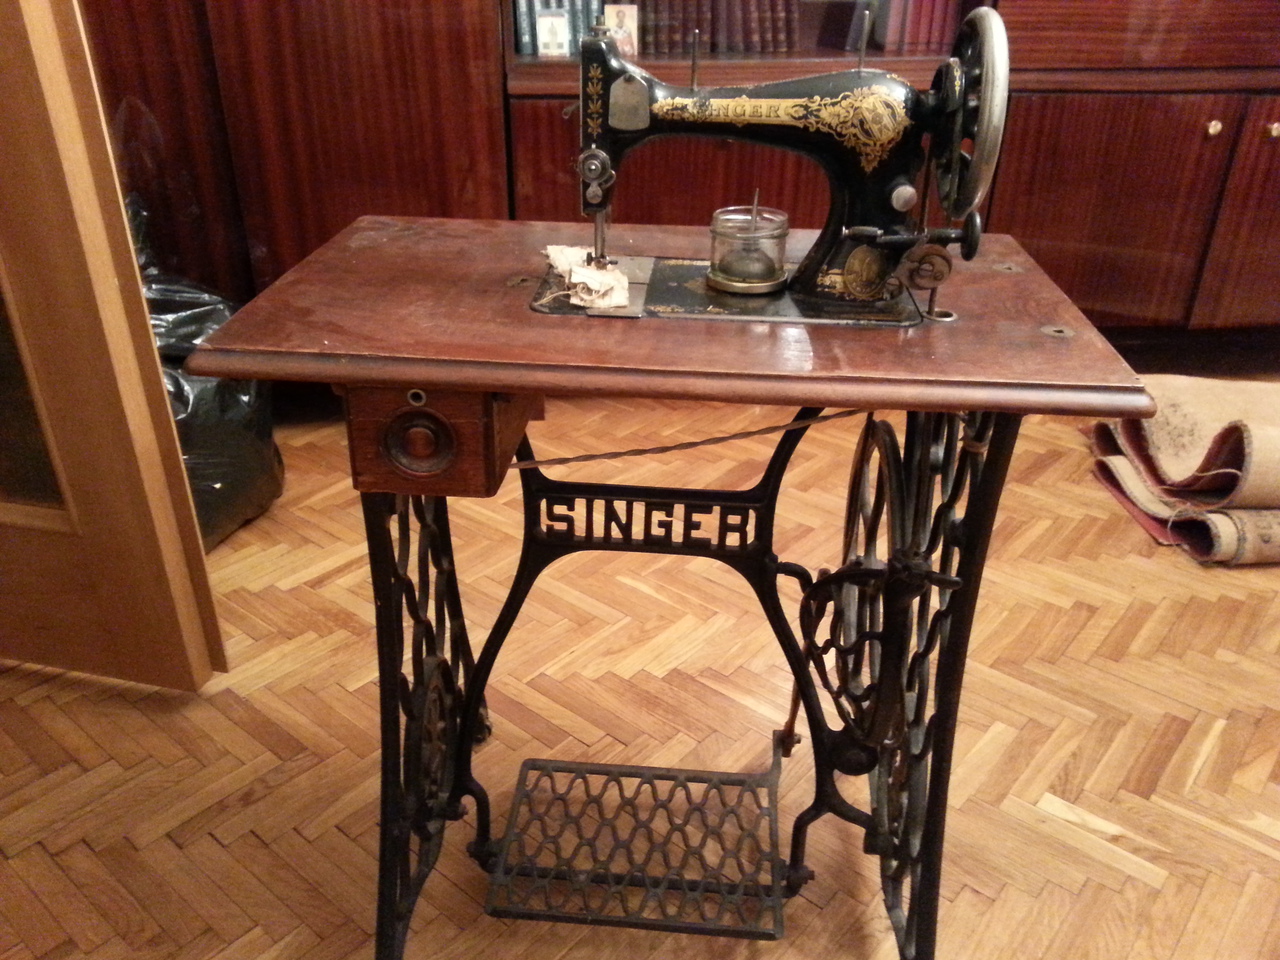 Zinger швейная машинка а3535836